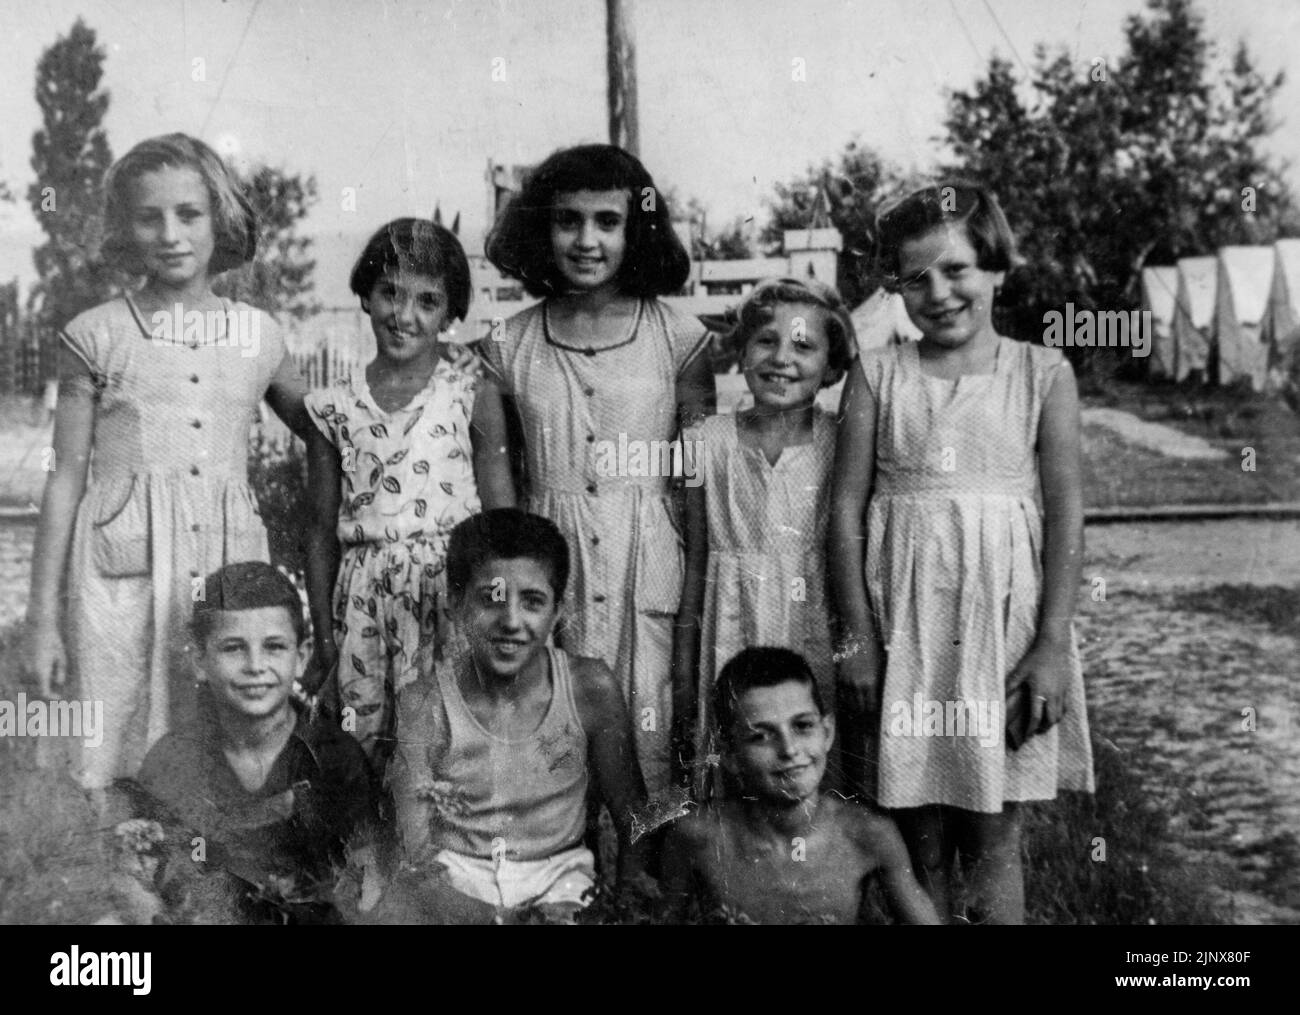 Gruppenportrait von Mädchen und Jungen im Jahr 50s, Bulgarien Stockfoto